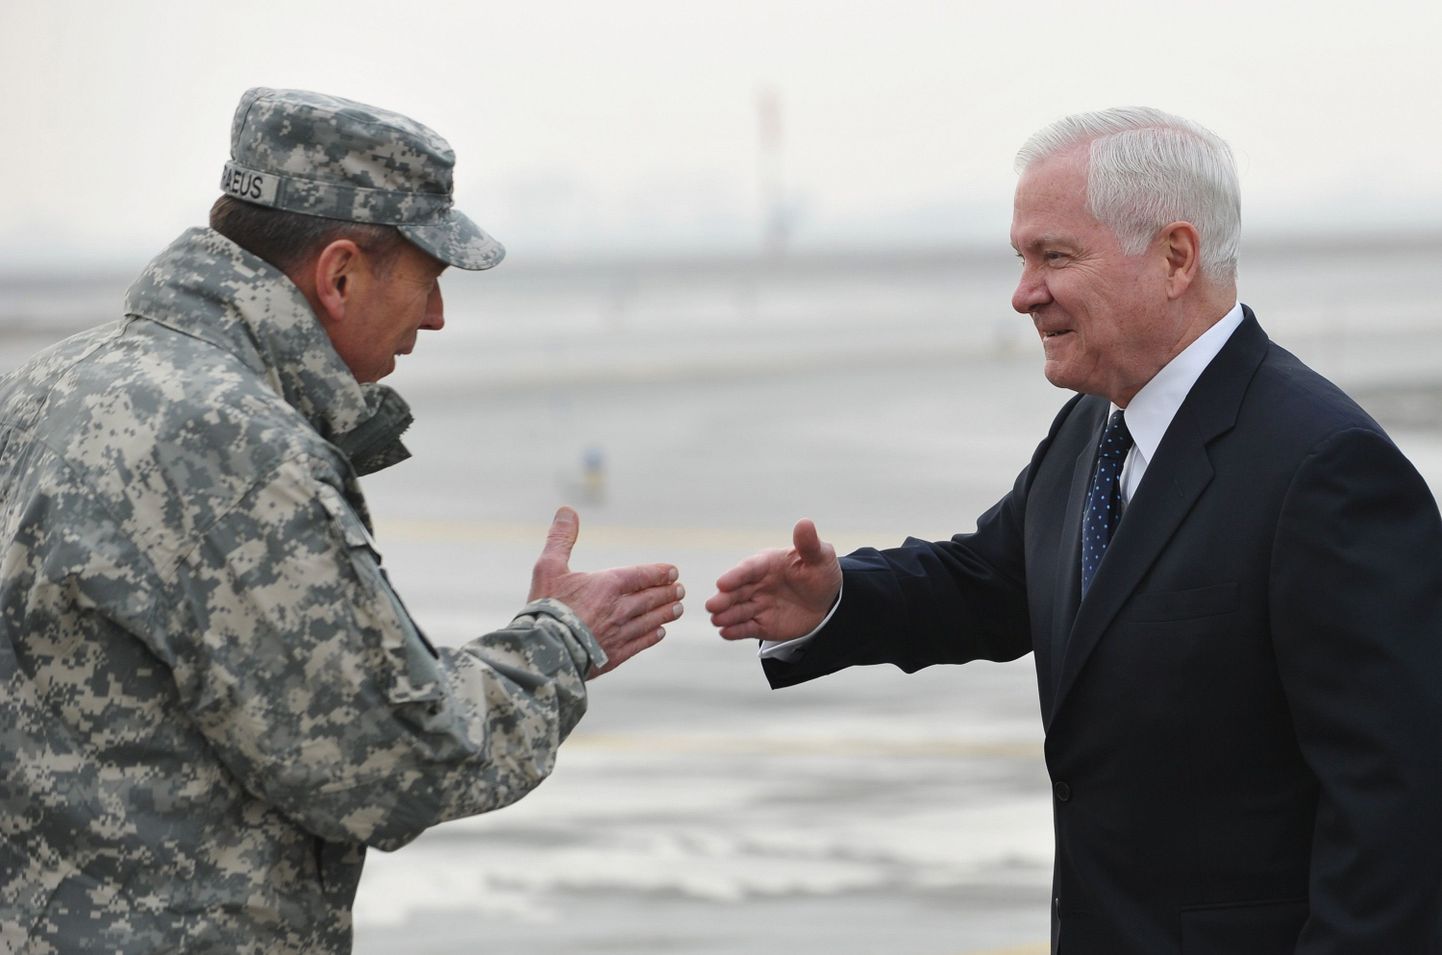 Генерал Дэвид Петрэус, командующий силами международной коалиции ISAF в Афганистане, встречает Гейтса в аэропорту Кабула утром 7 марта.